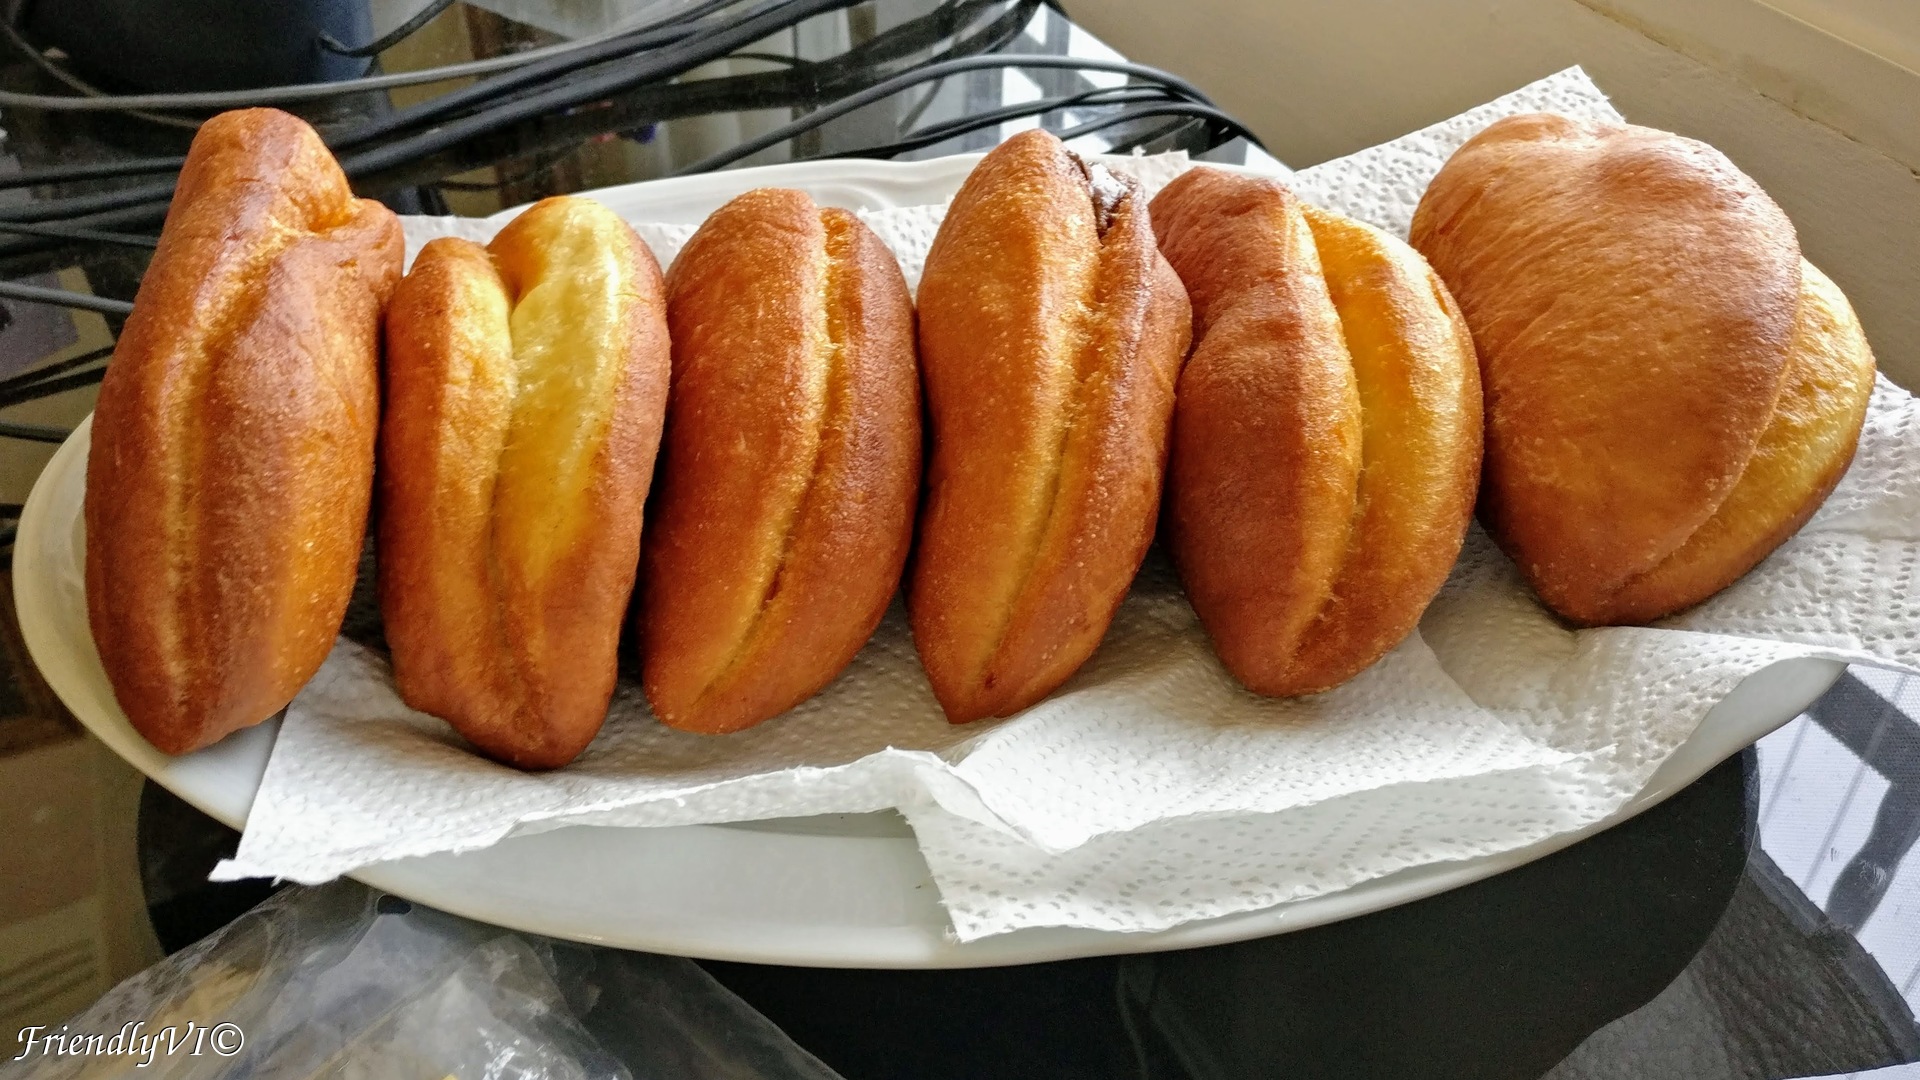 stuffed Romanian donuts